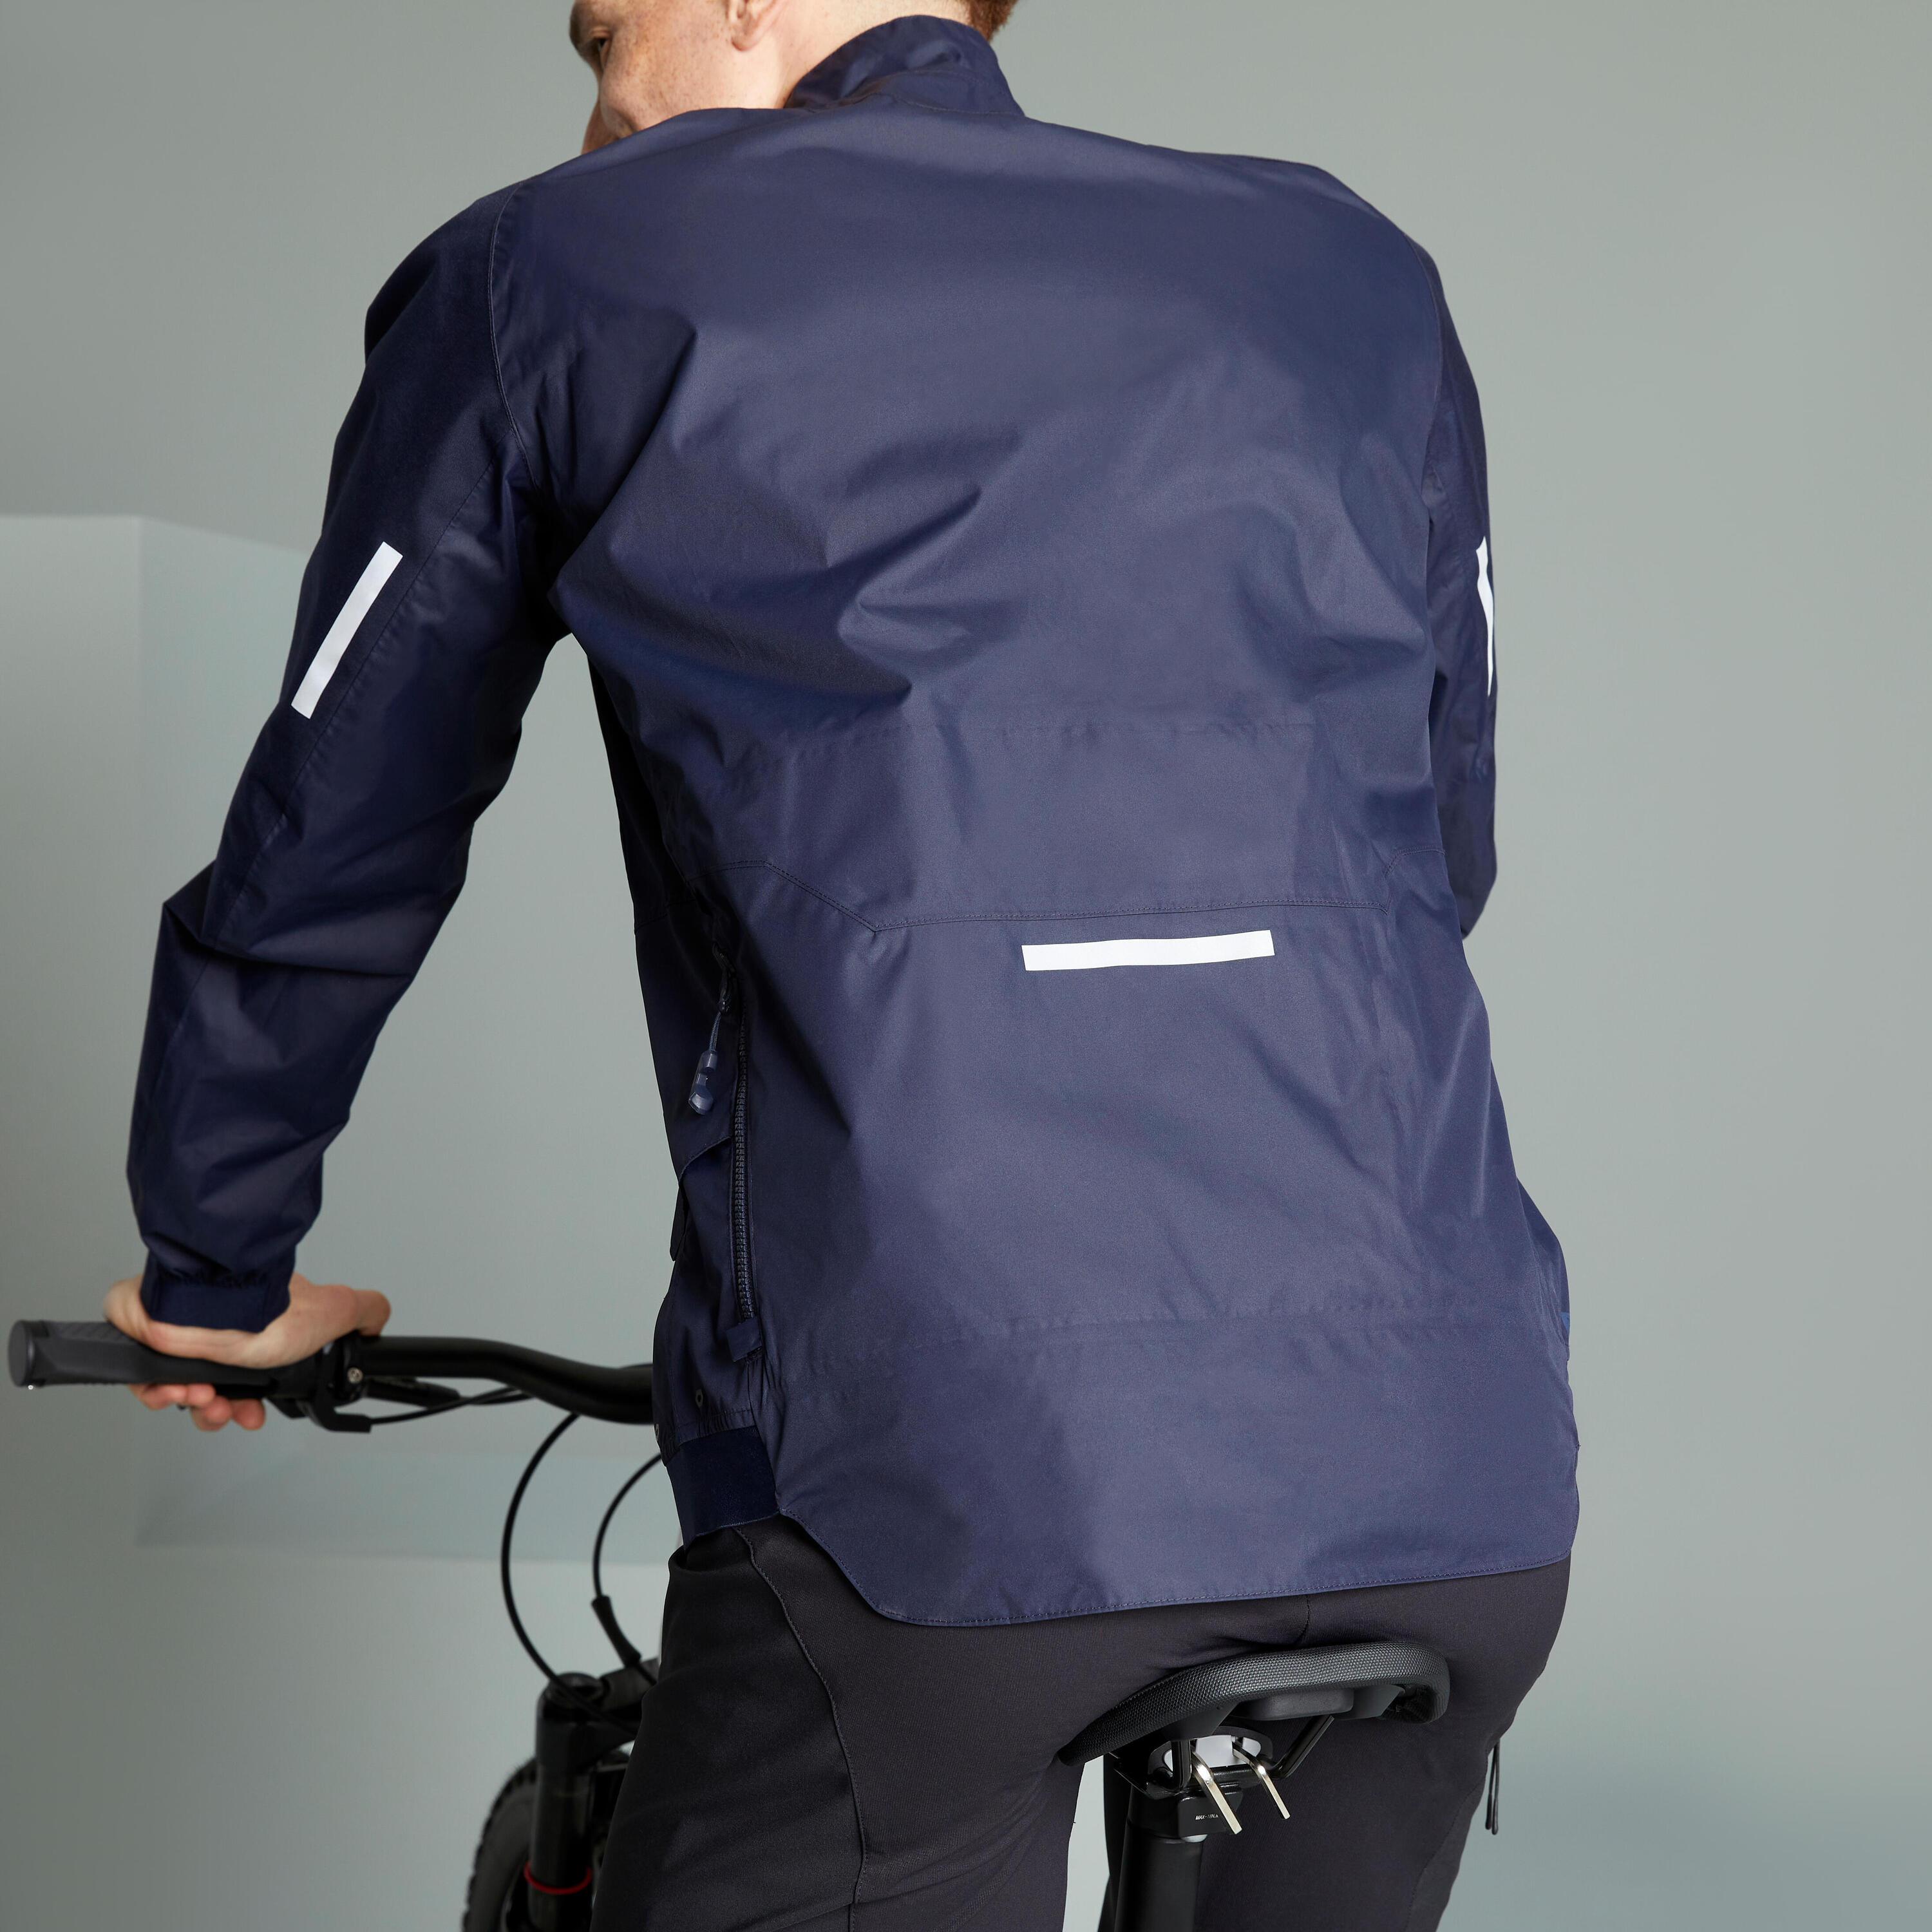 Rainproof MTB Jacket EXPL 500 - Blue 4/12